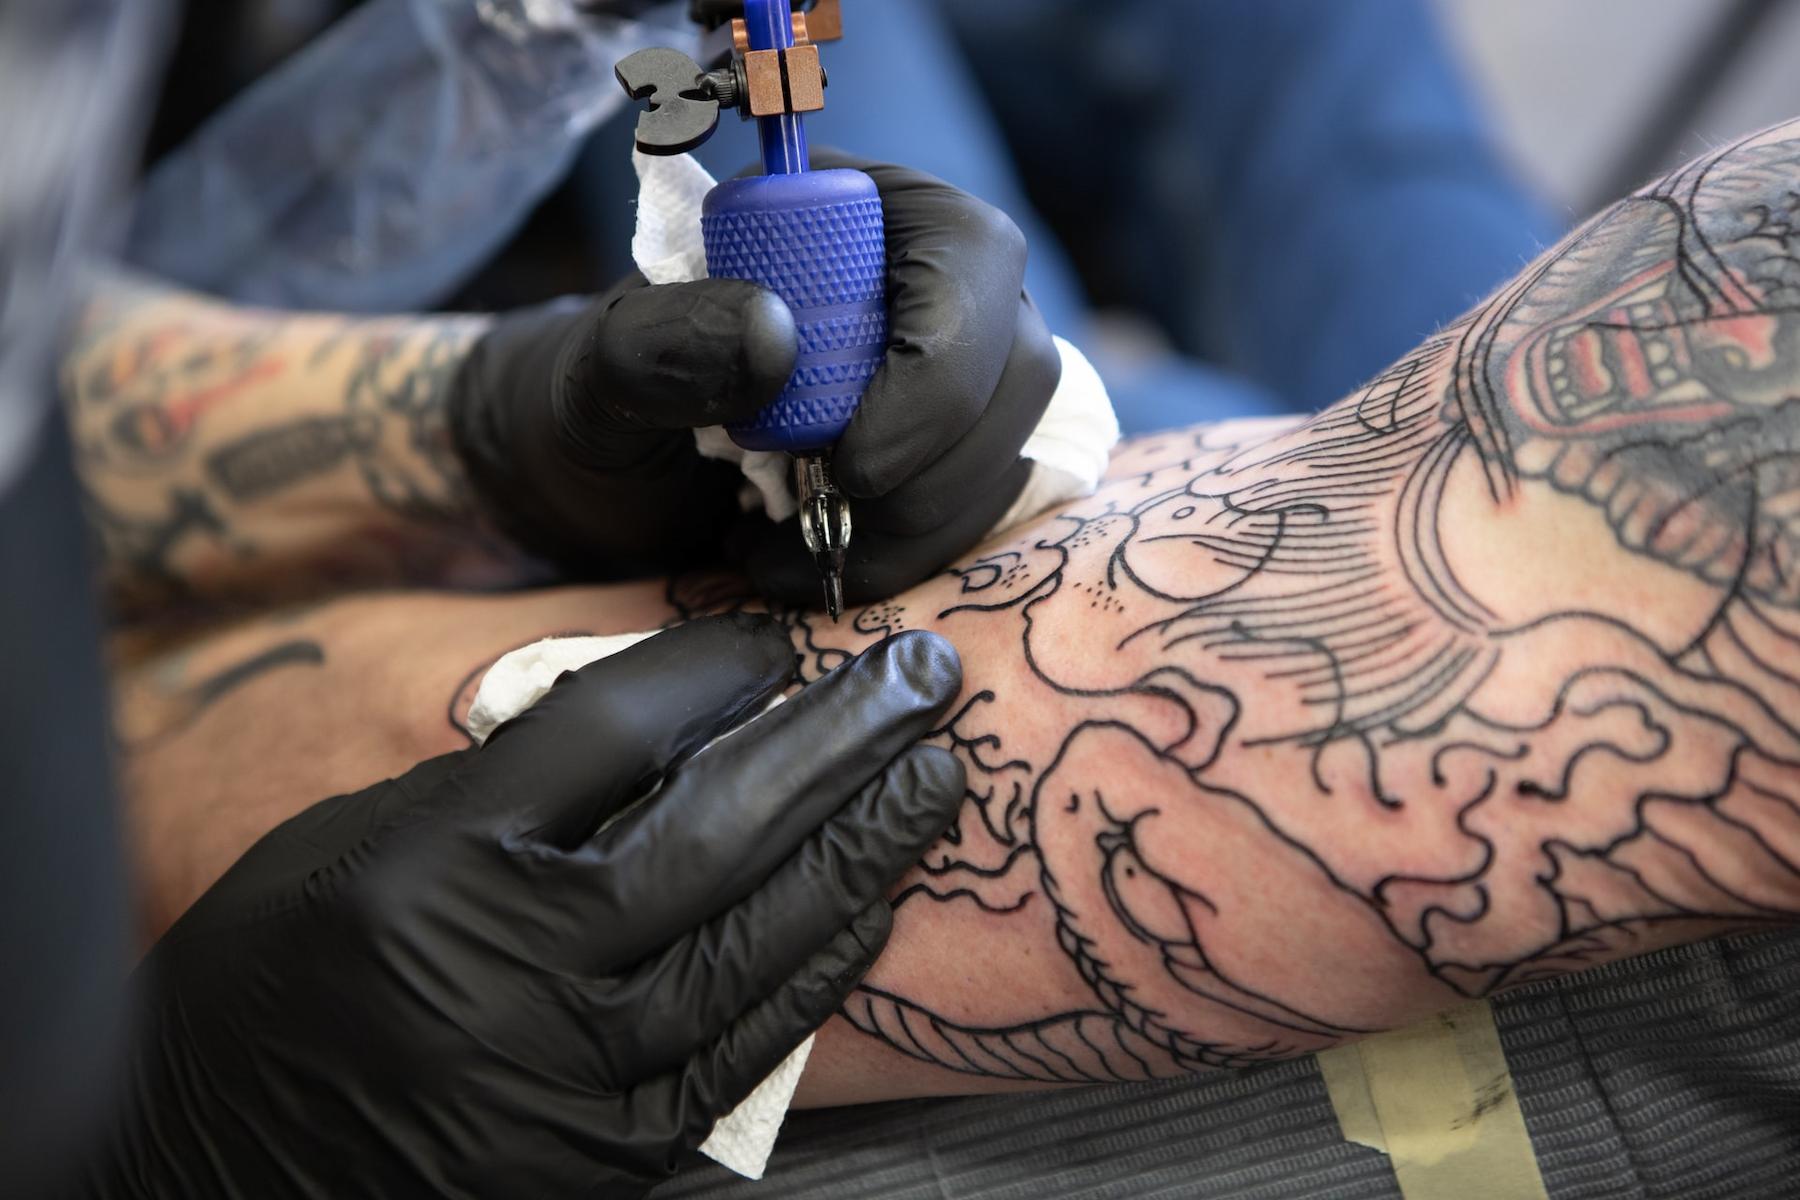 Tattoo Ink